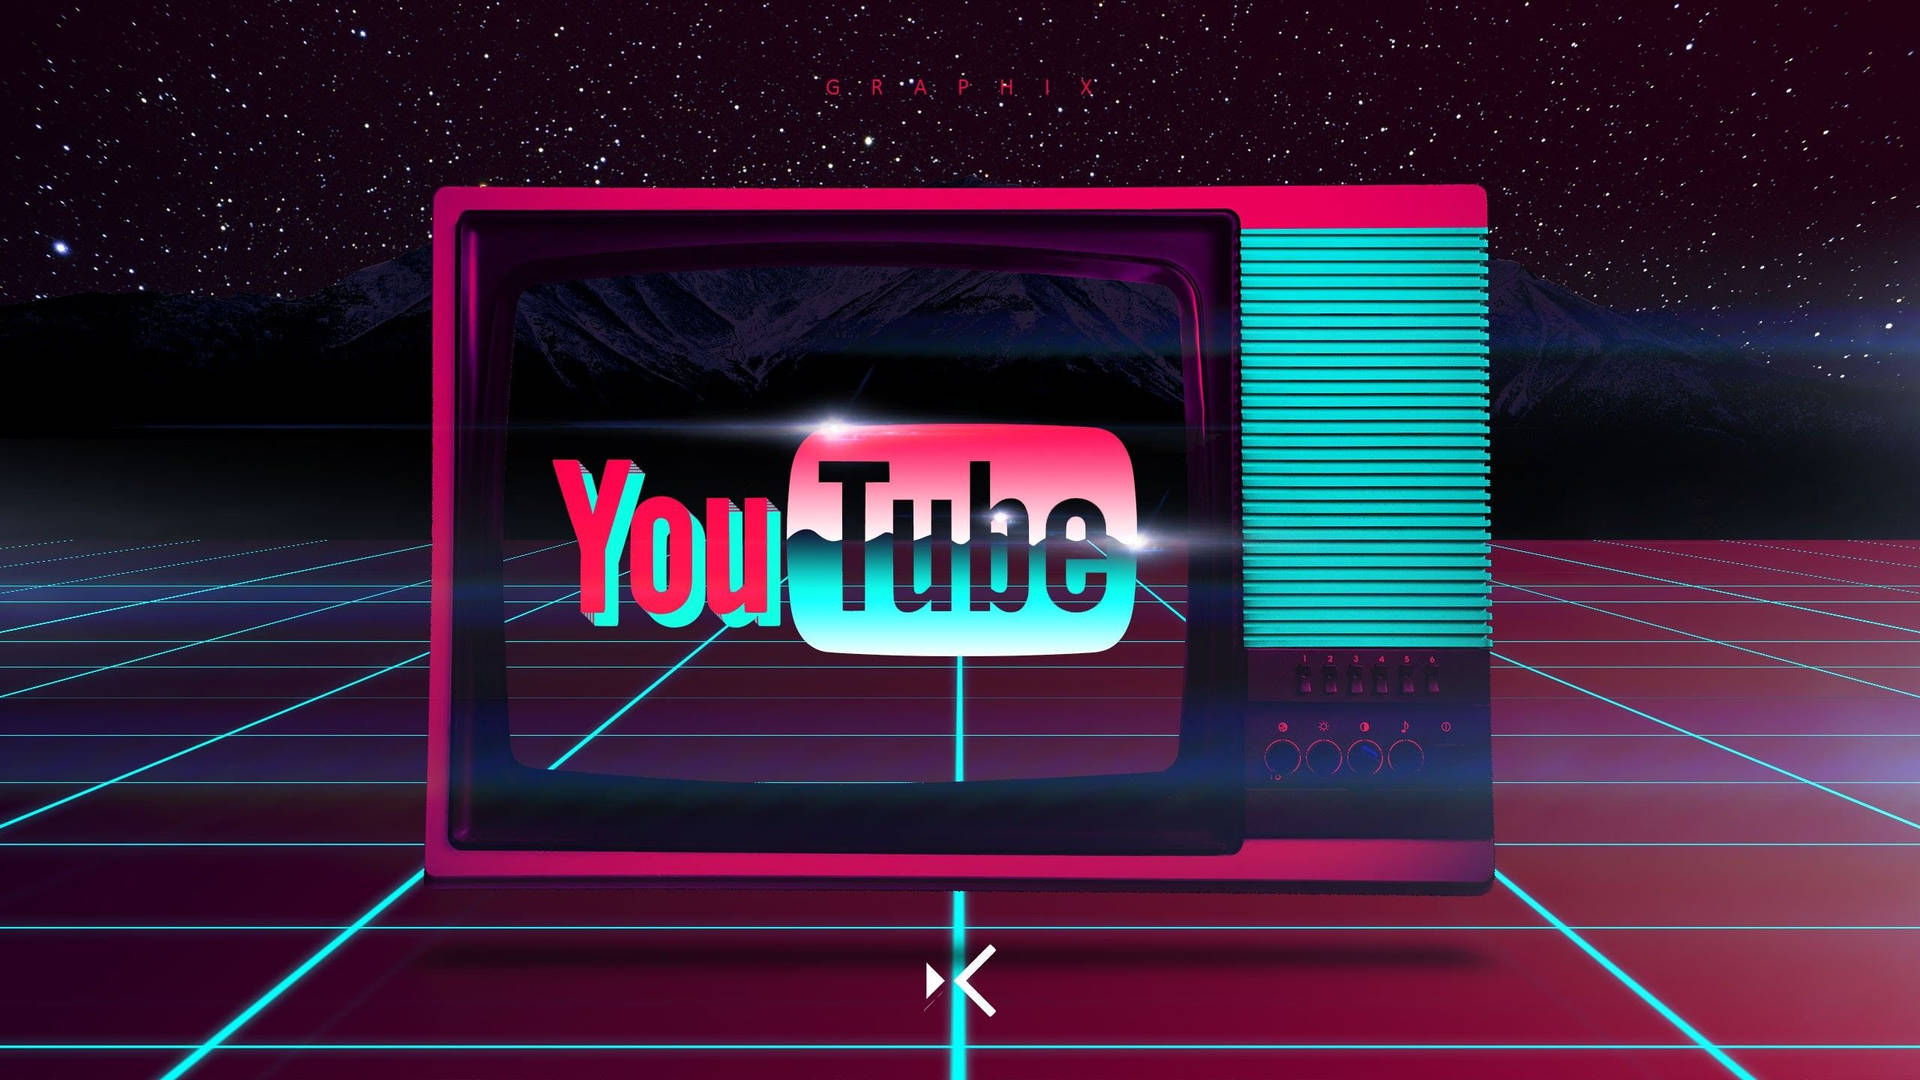 Logode Youtube Con Estética De Vaporwave Fondo de pantalla